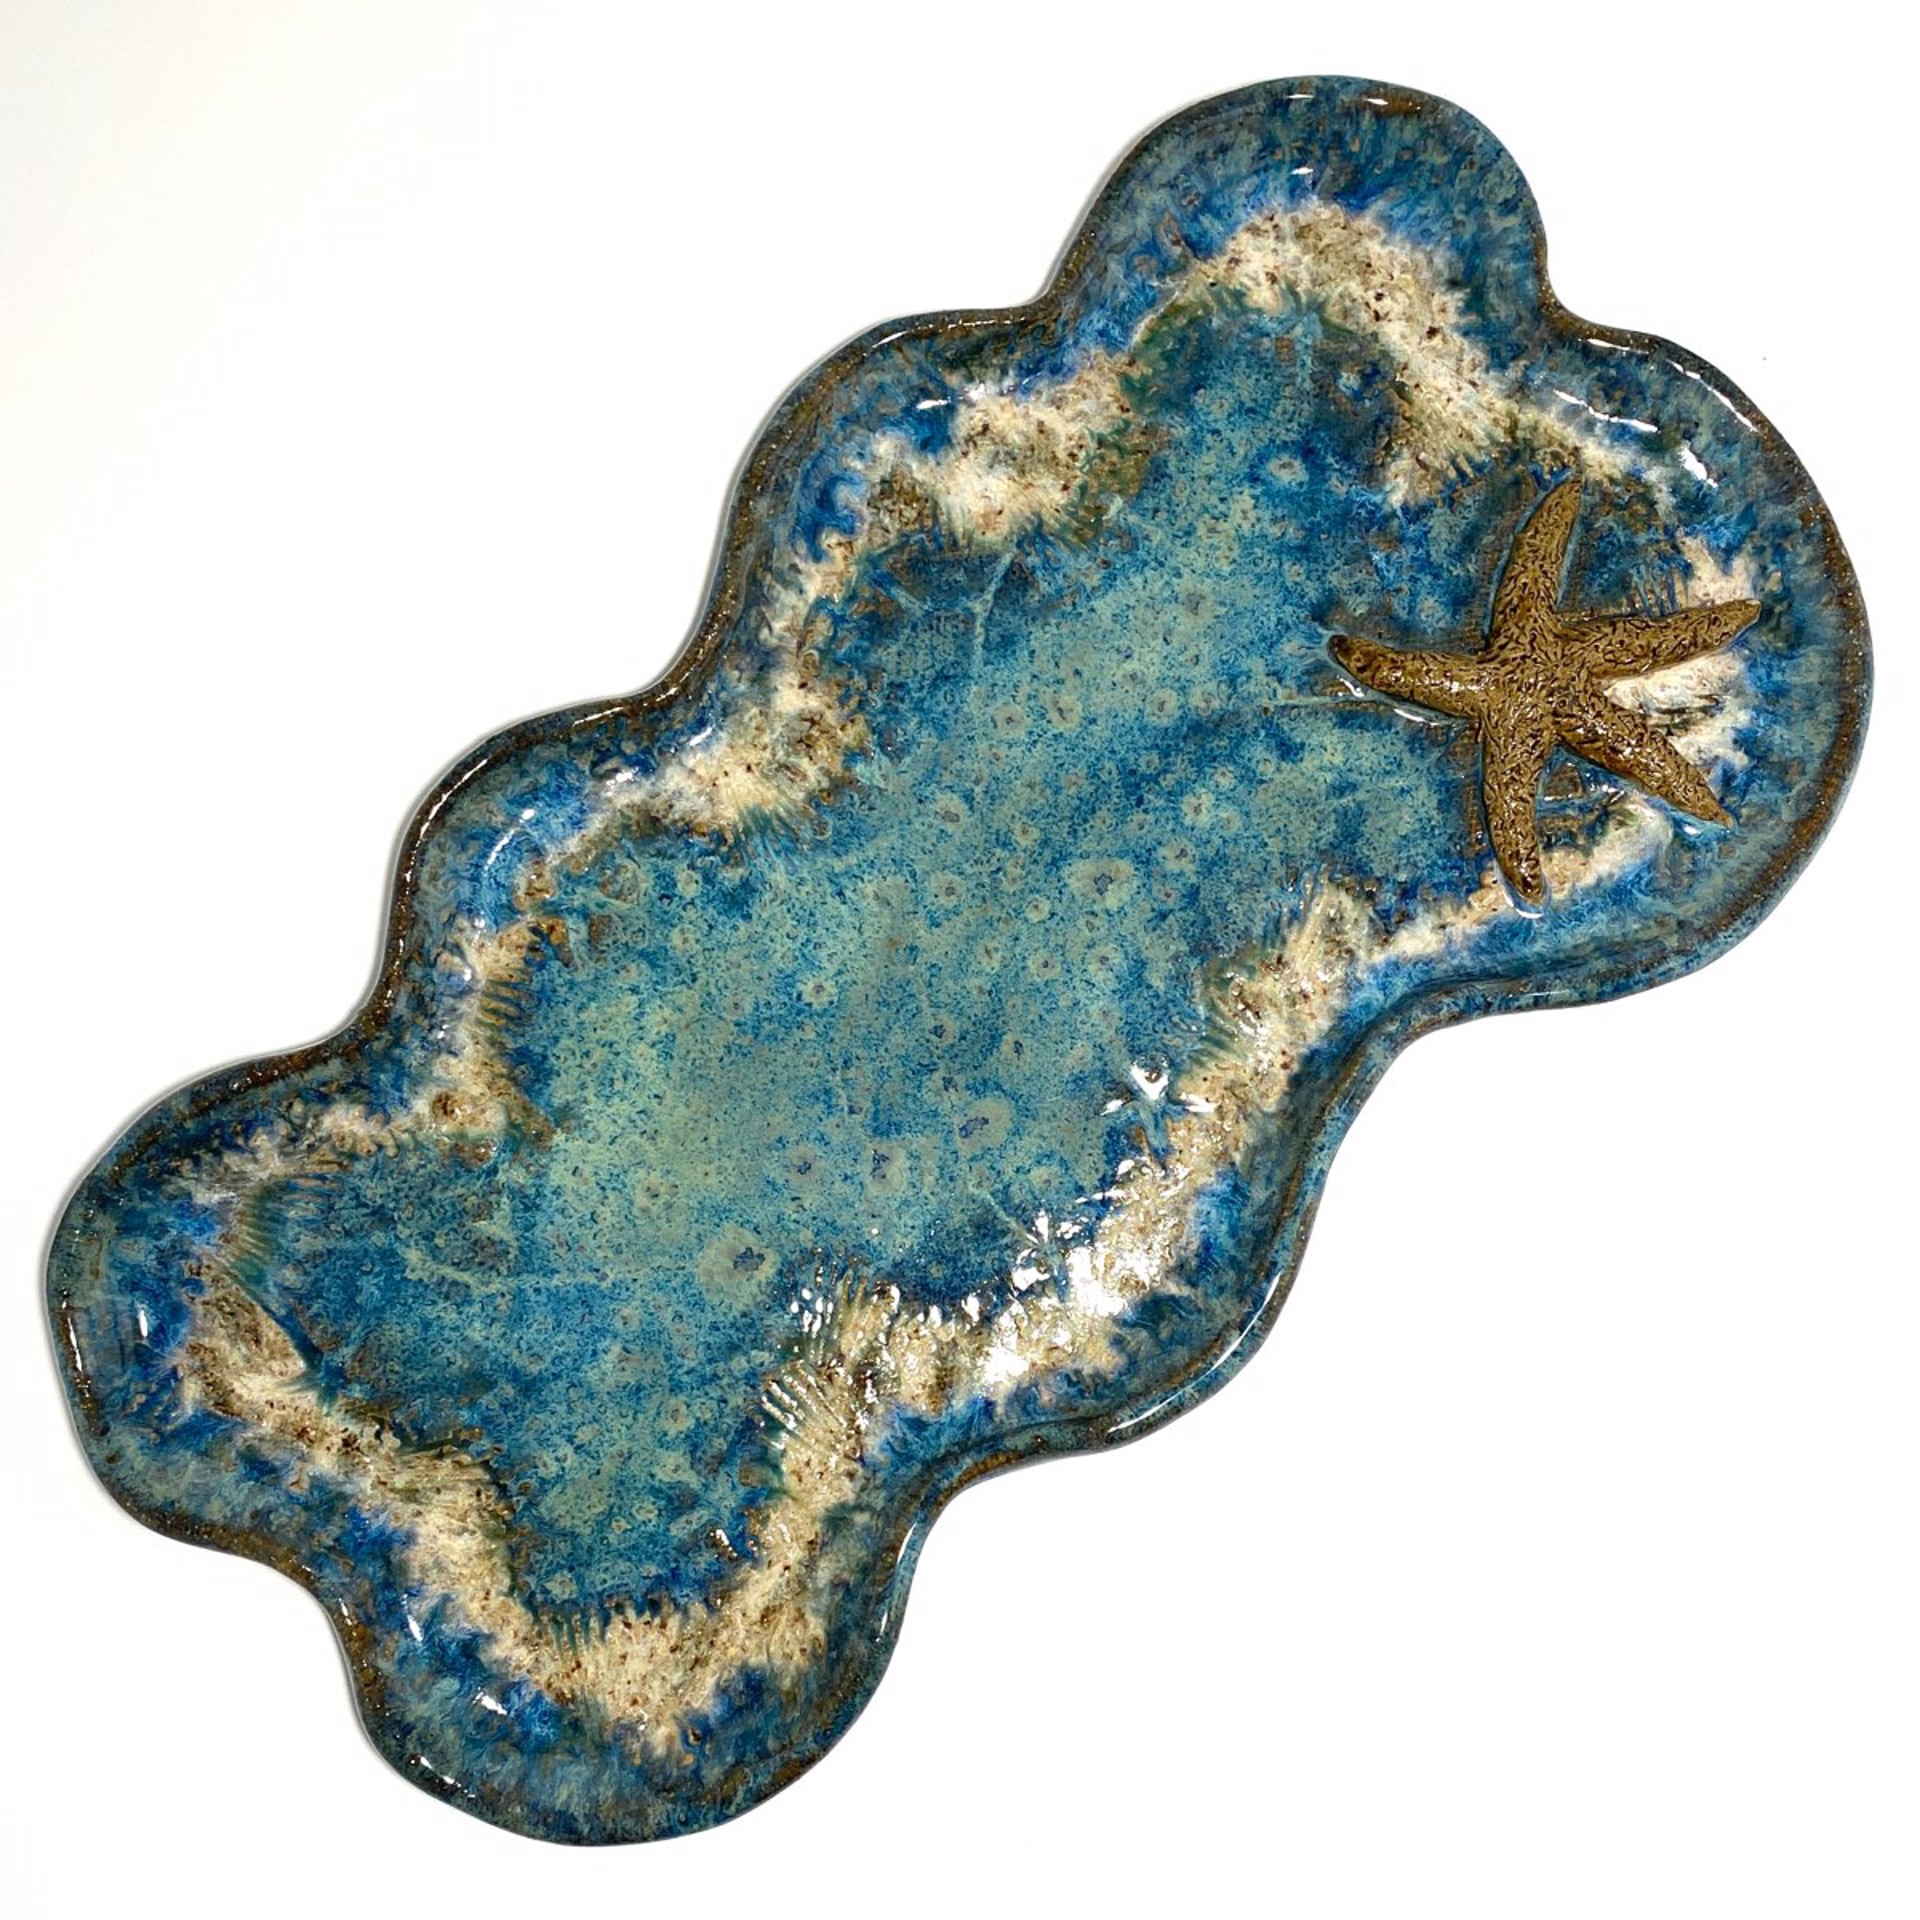 Wavy Tray with One Starfish (Blue Glaze) LG23-1138 by Jim & Steffi Logan